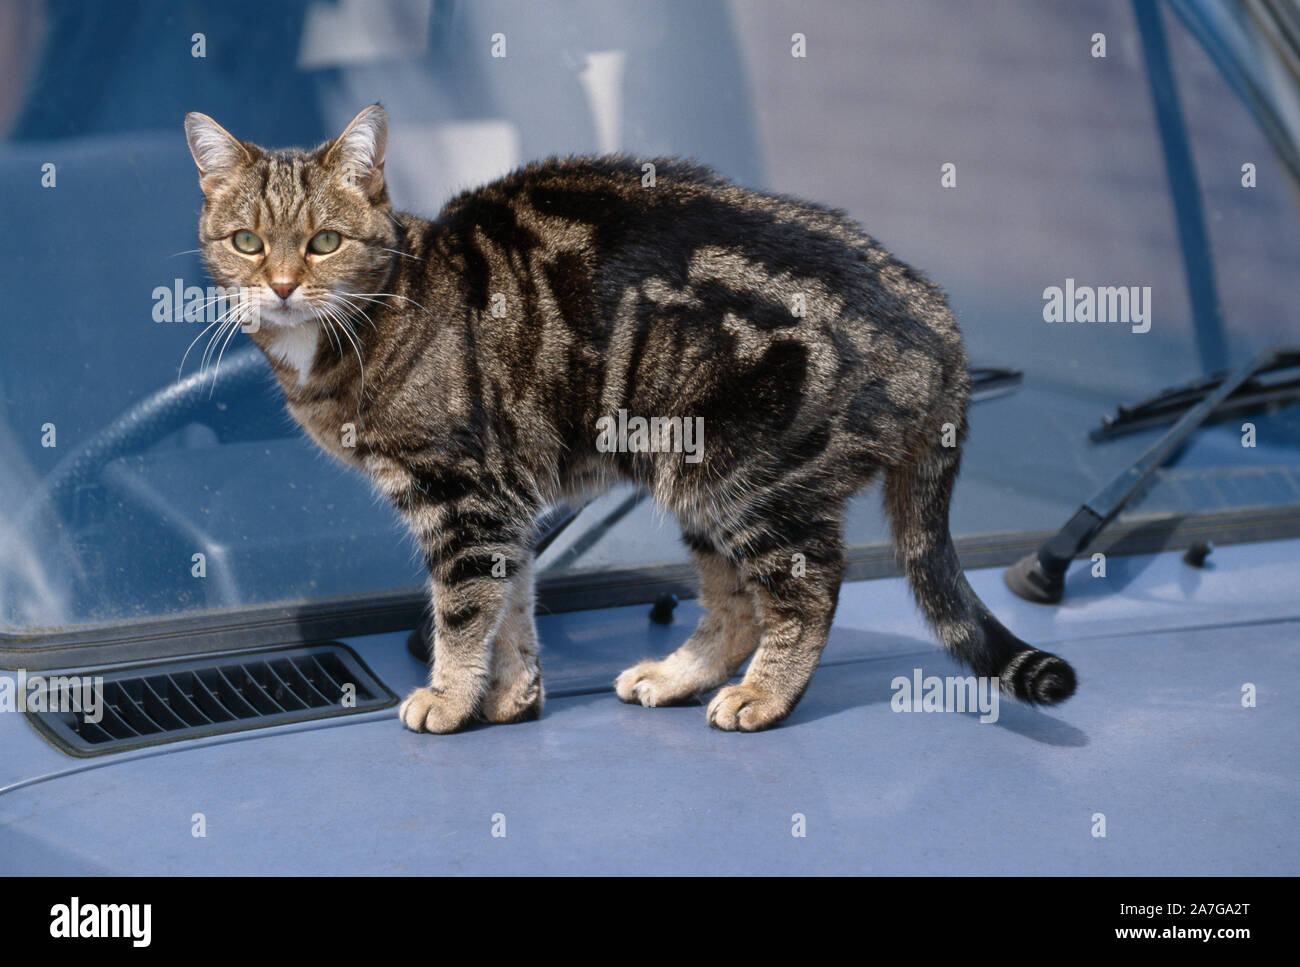 Animaux domestiques, chat tigré, debout sur le capot d'une voiture Banque D'Images